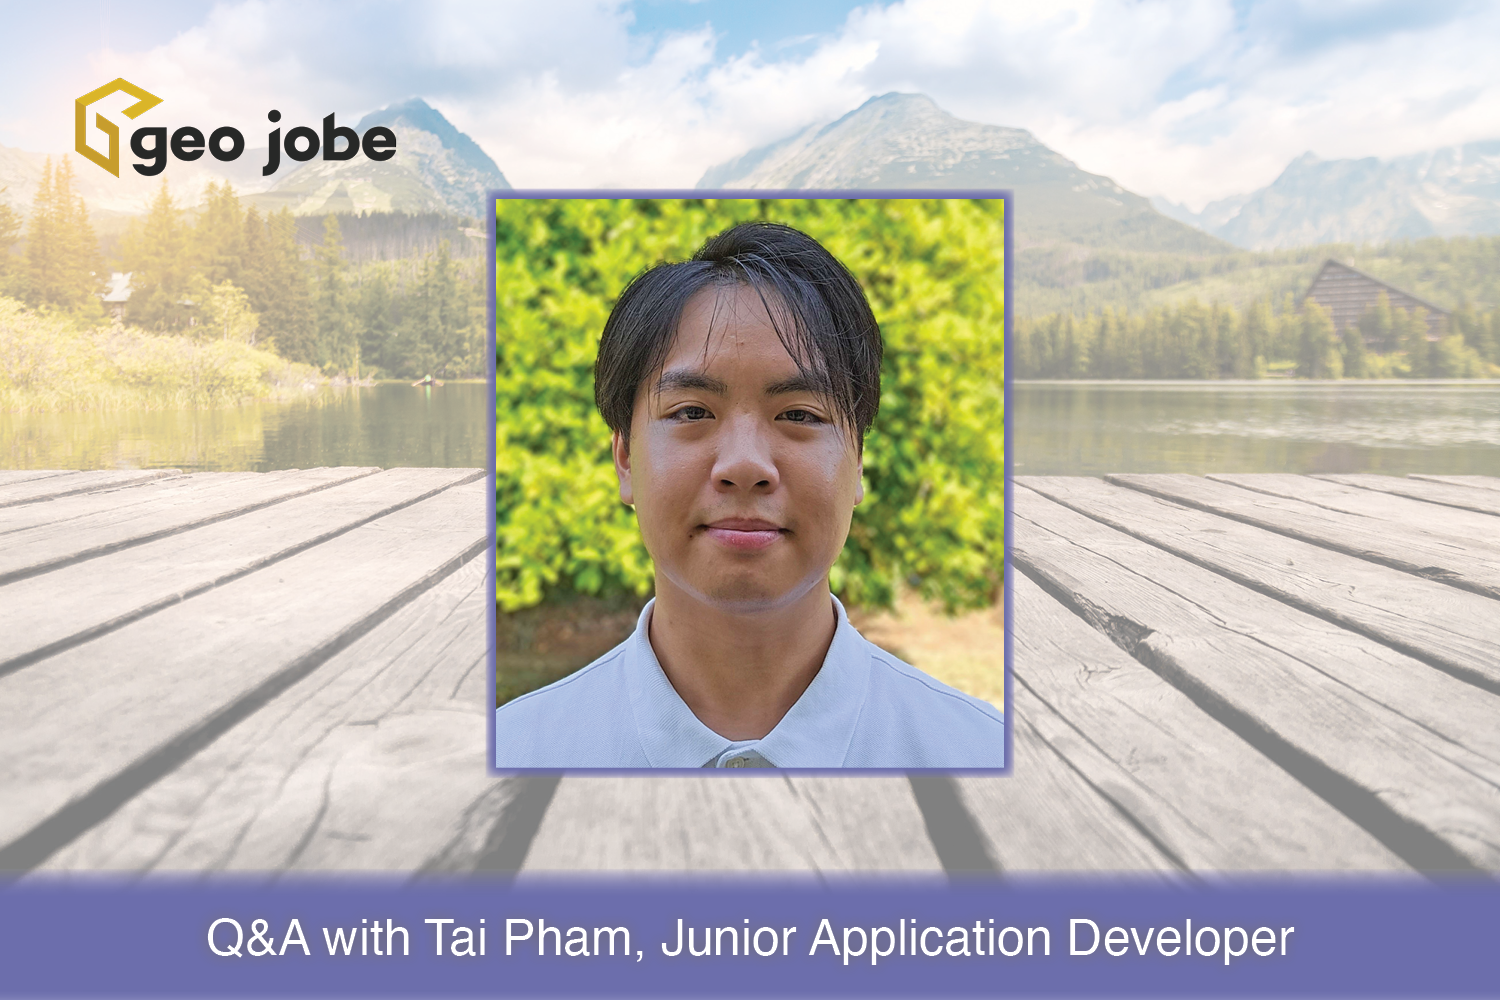 Q&A with Tai Pham, Junior Application Developer